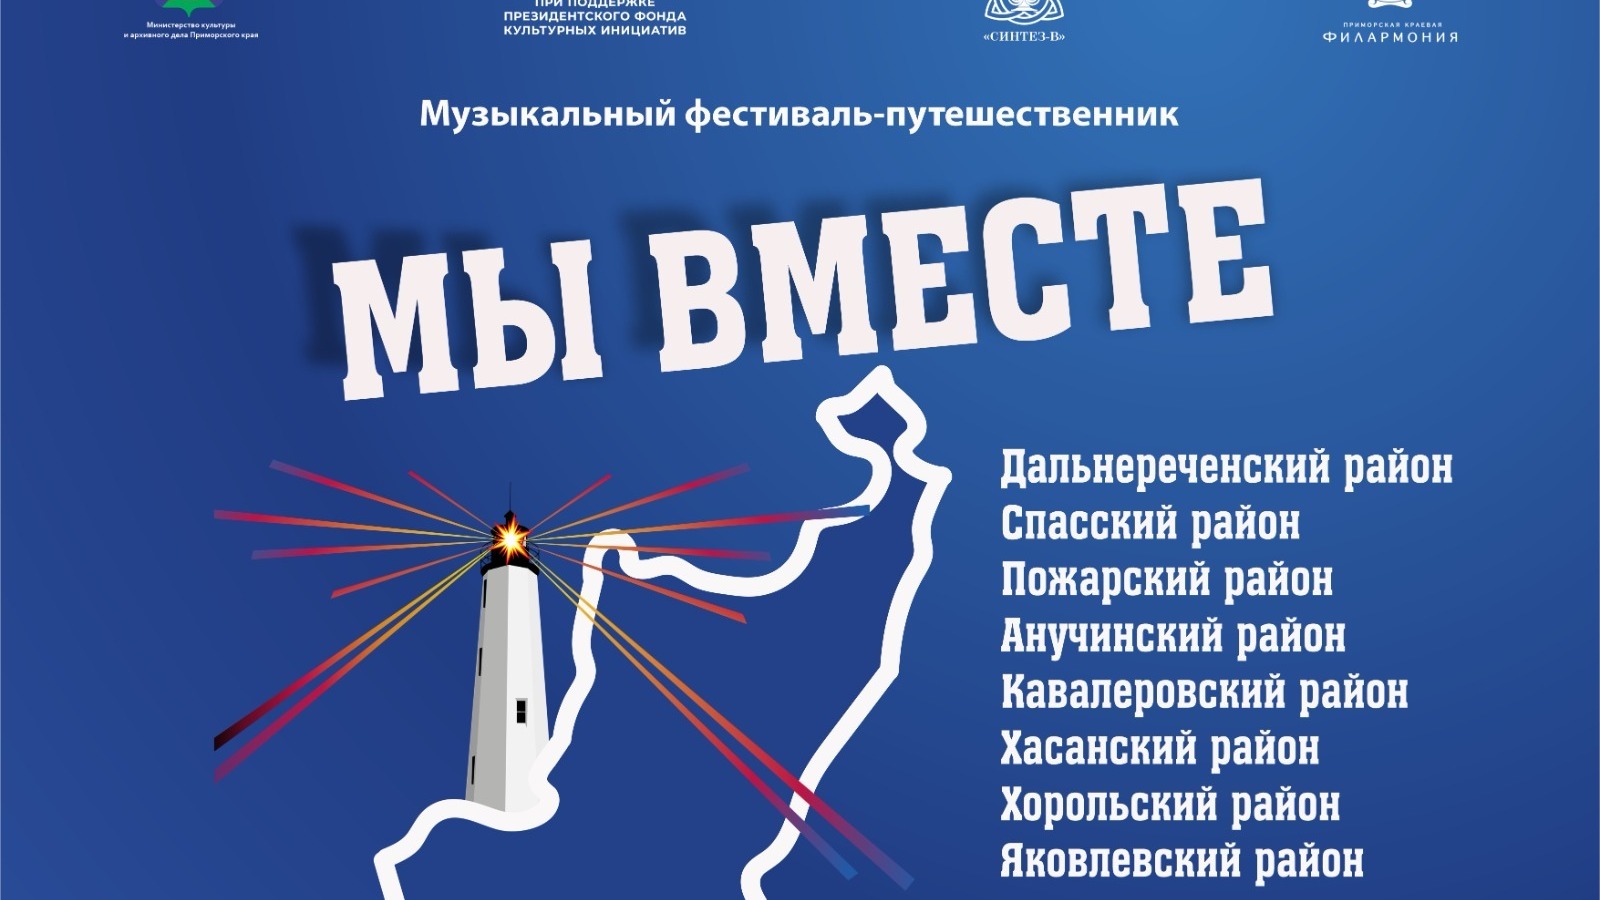 В Приморском крае пройдёт фестиваль-путешественник «Мы вместе»